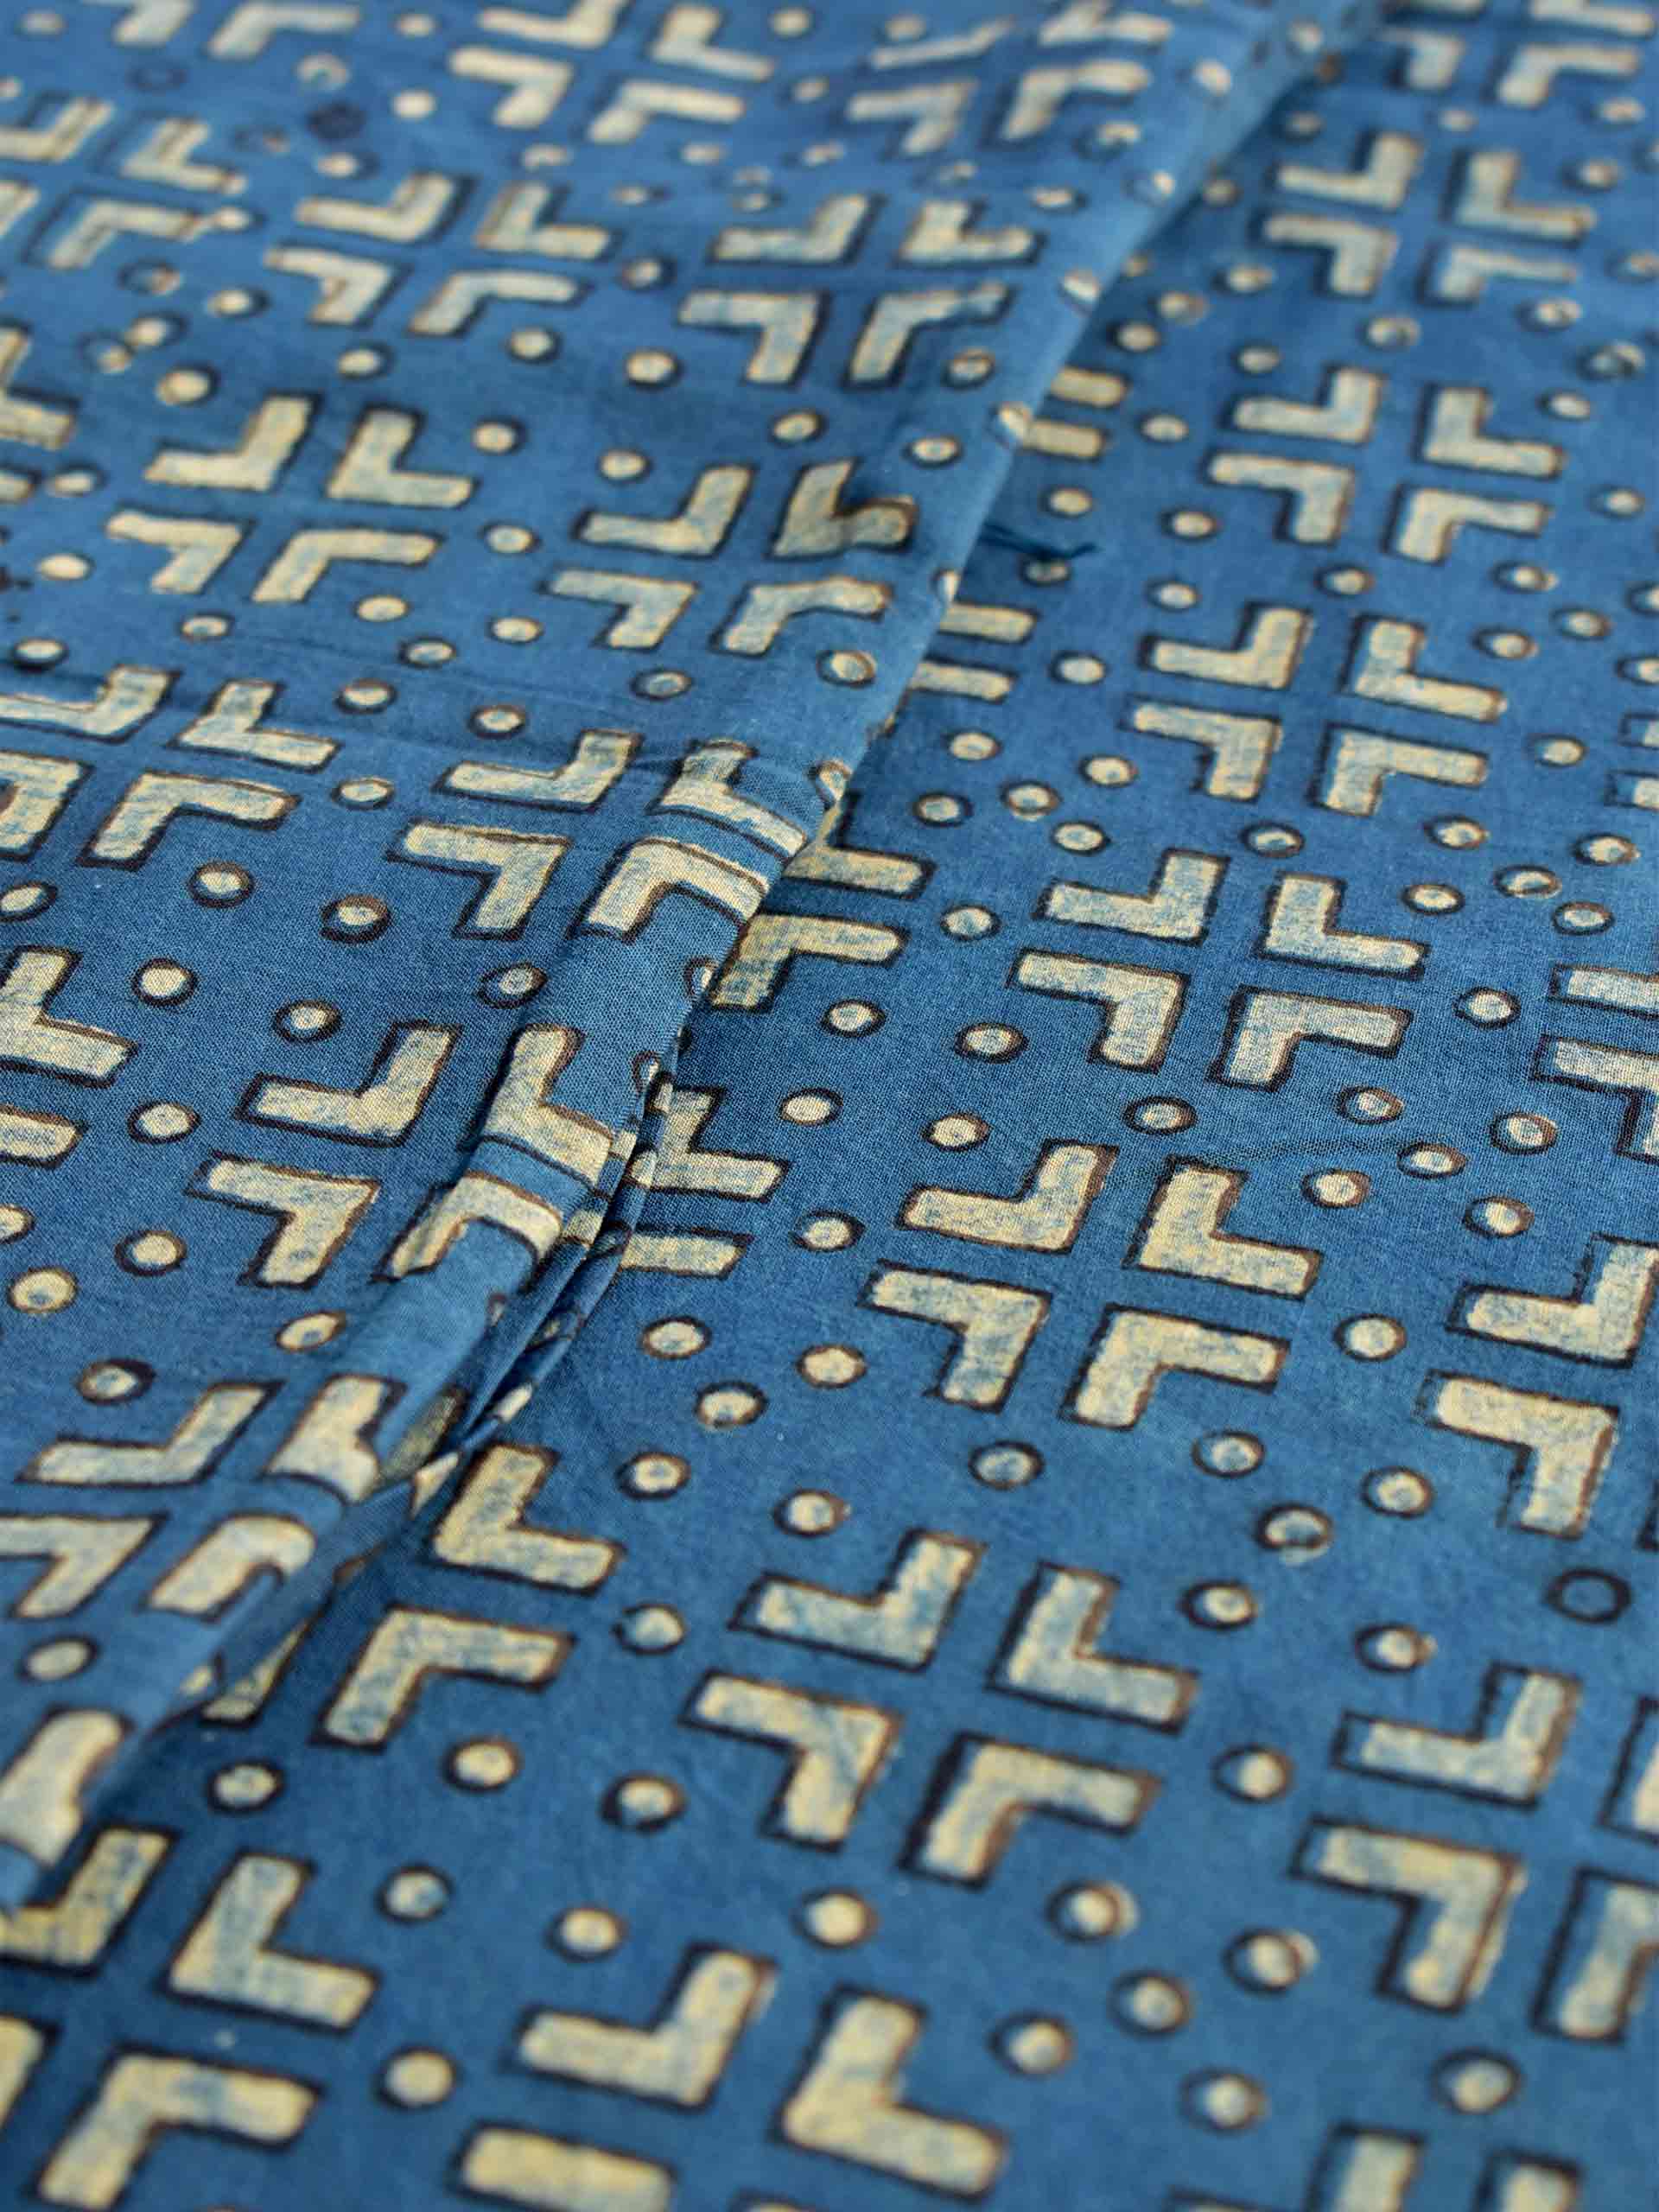 Indigo olives - hand block printed Cotton fabric 330 per meter